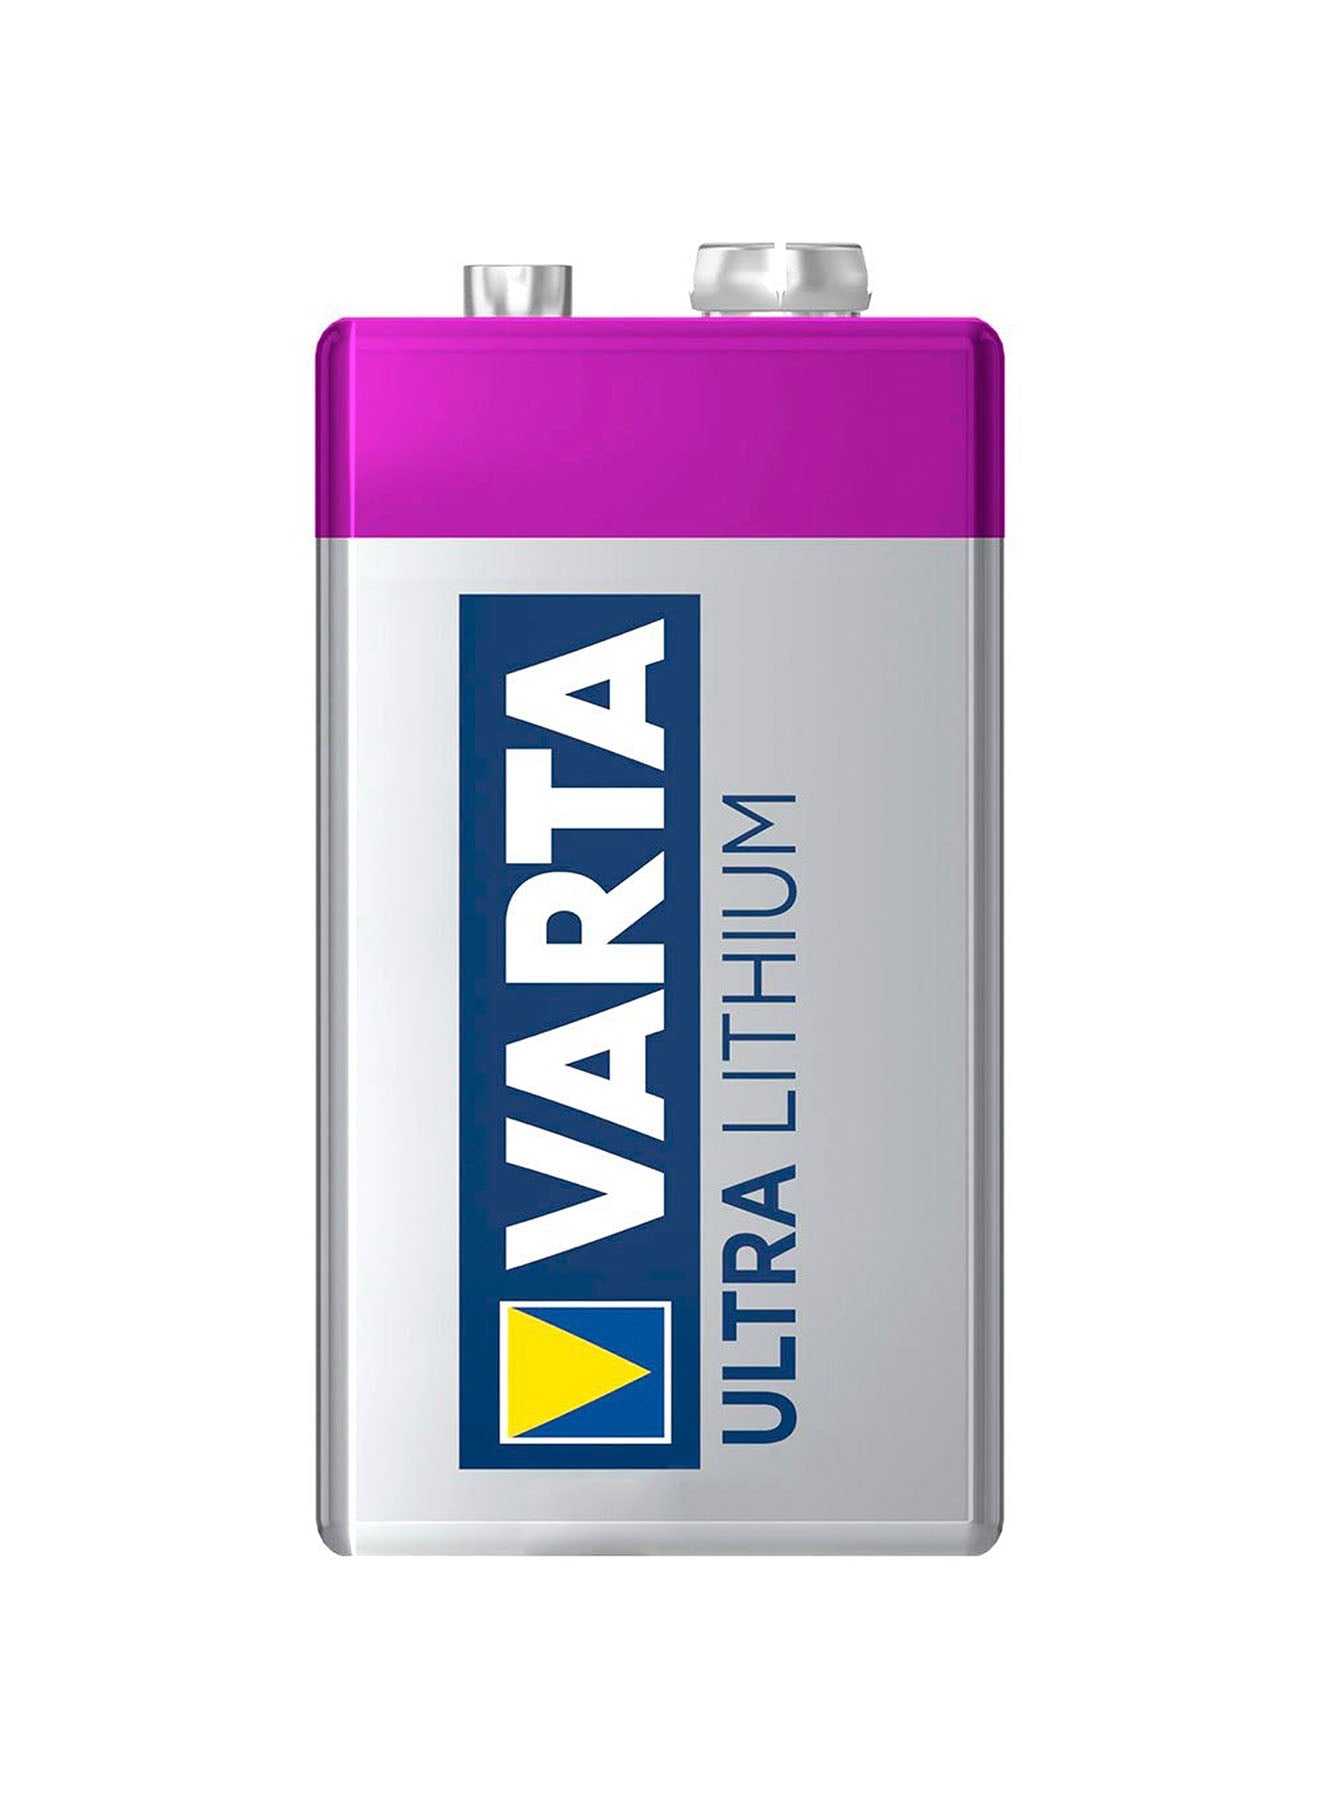 Varta Ultra Lithium 9VBlock 6 LR Batteries Value Pack of 2 